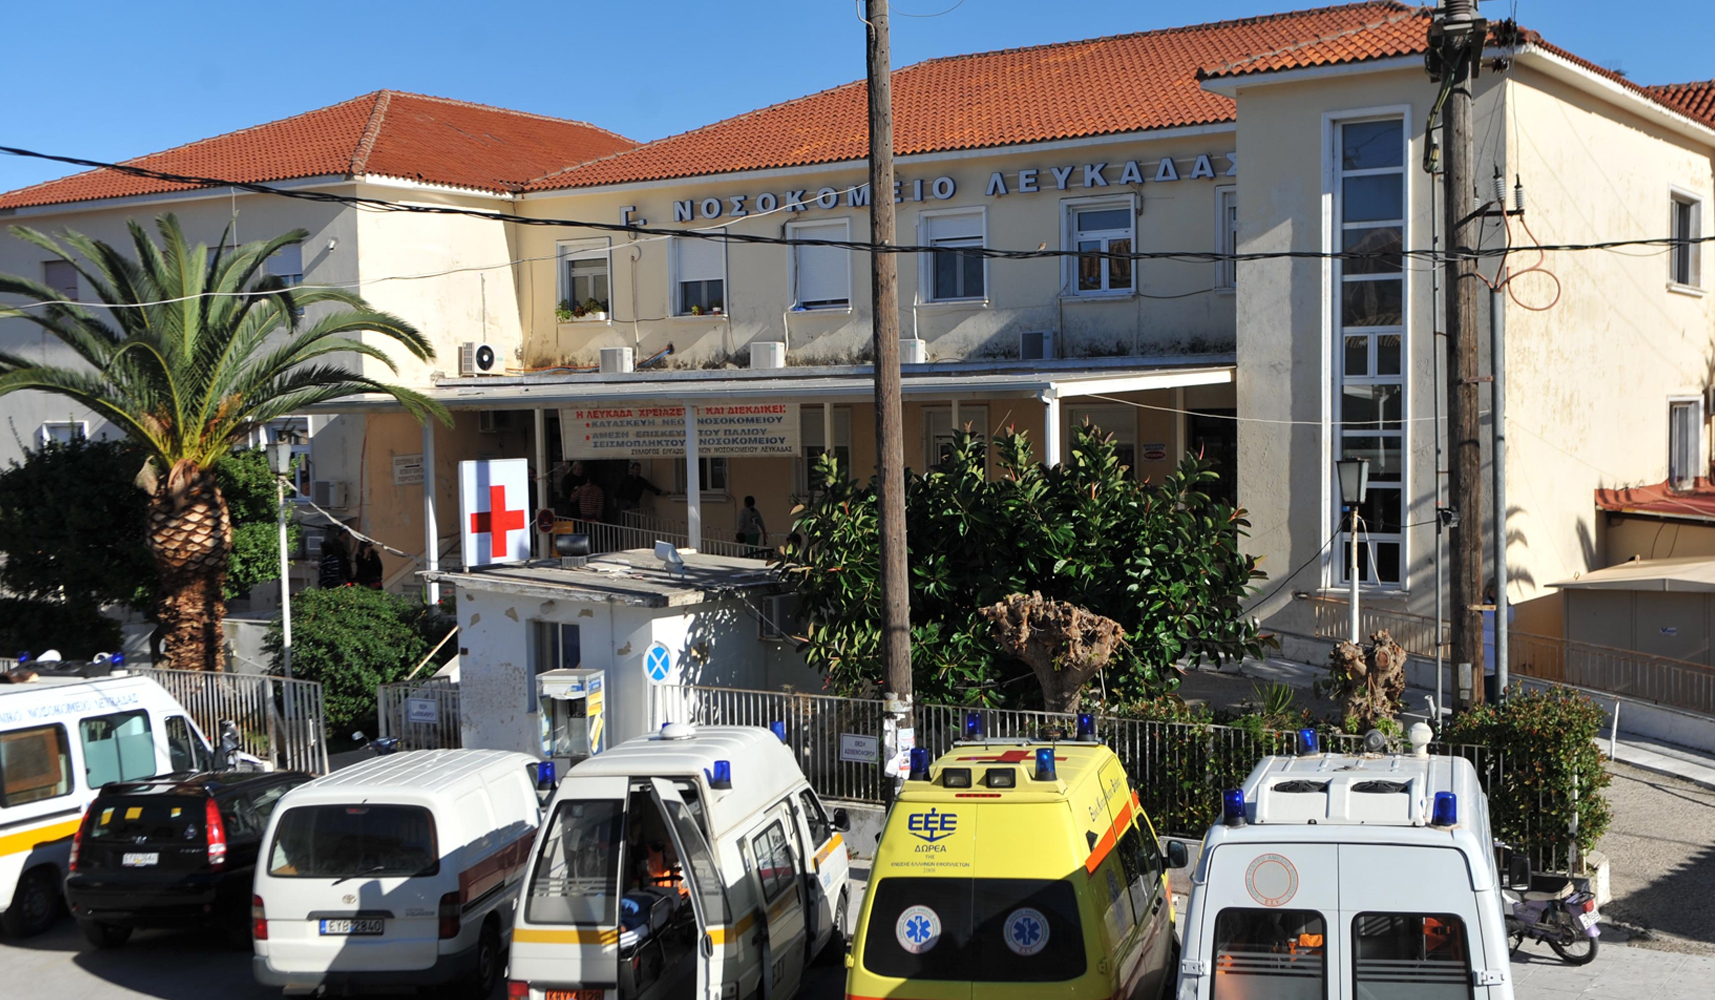 Τέσσερις τραυματίες έχουν μεταφερθεί στο νοσοκομείο της Λευκάδας